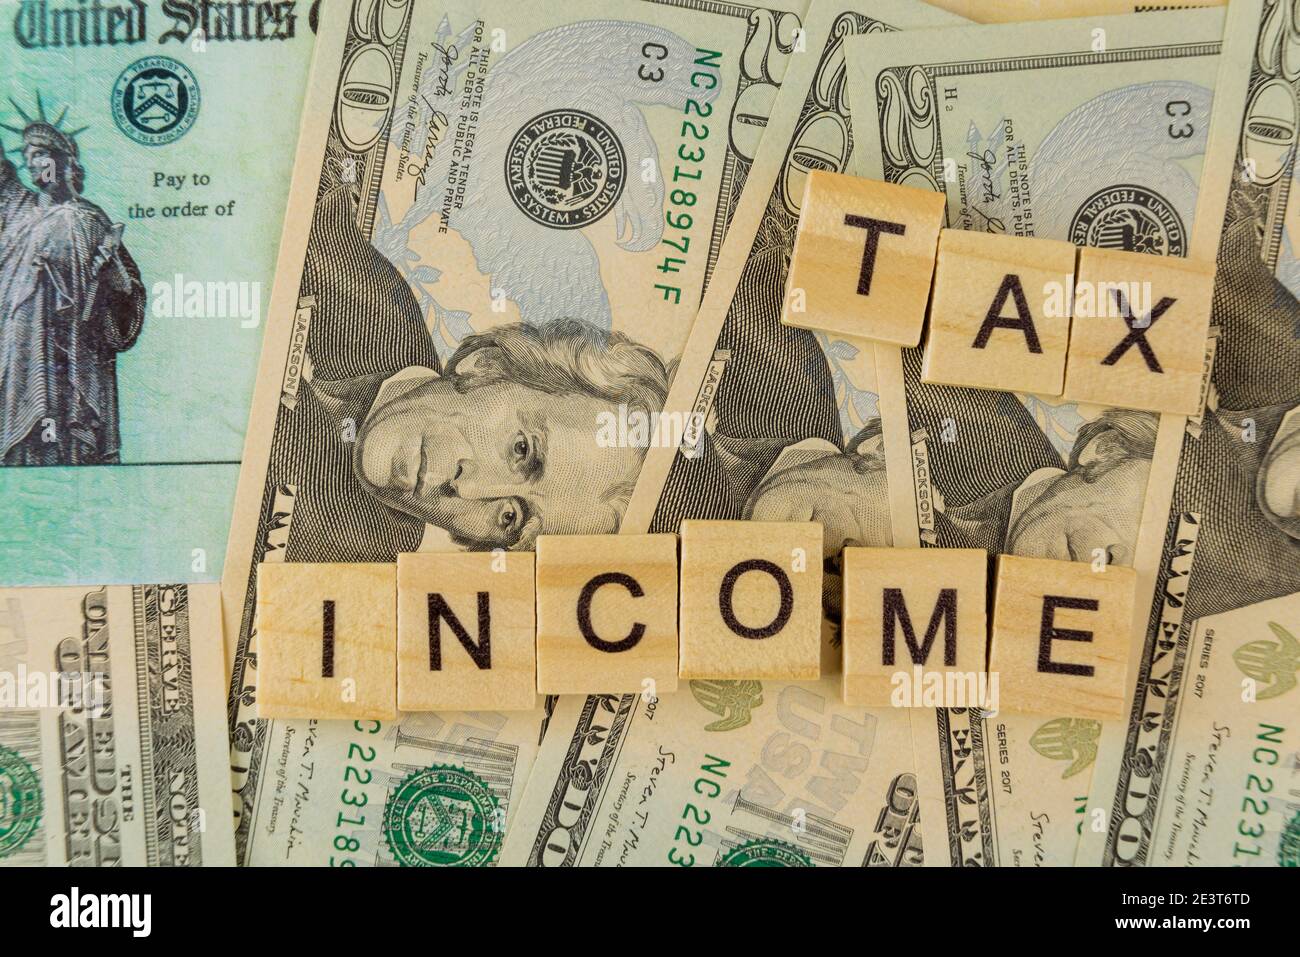 REDDITO FISCALE American Internal Revenue Service Imposta individuale sul reddito a. Stimolo economico tax return check degli Stati Uniti molti dollari di valuta fattura Foto Stock